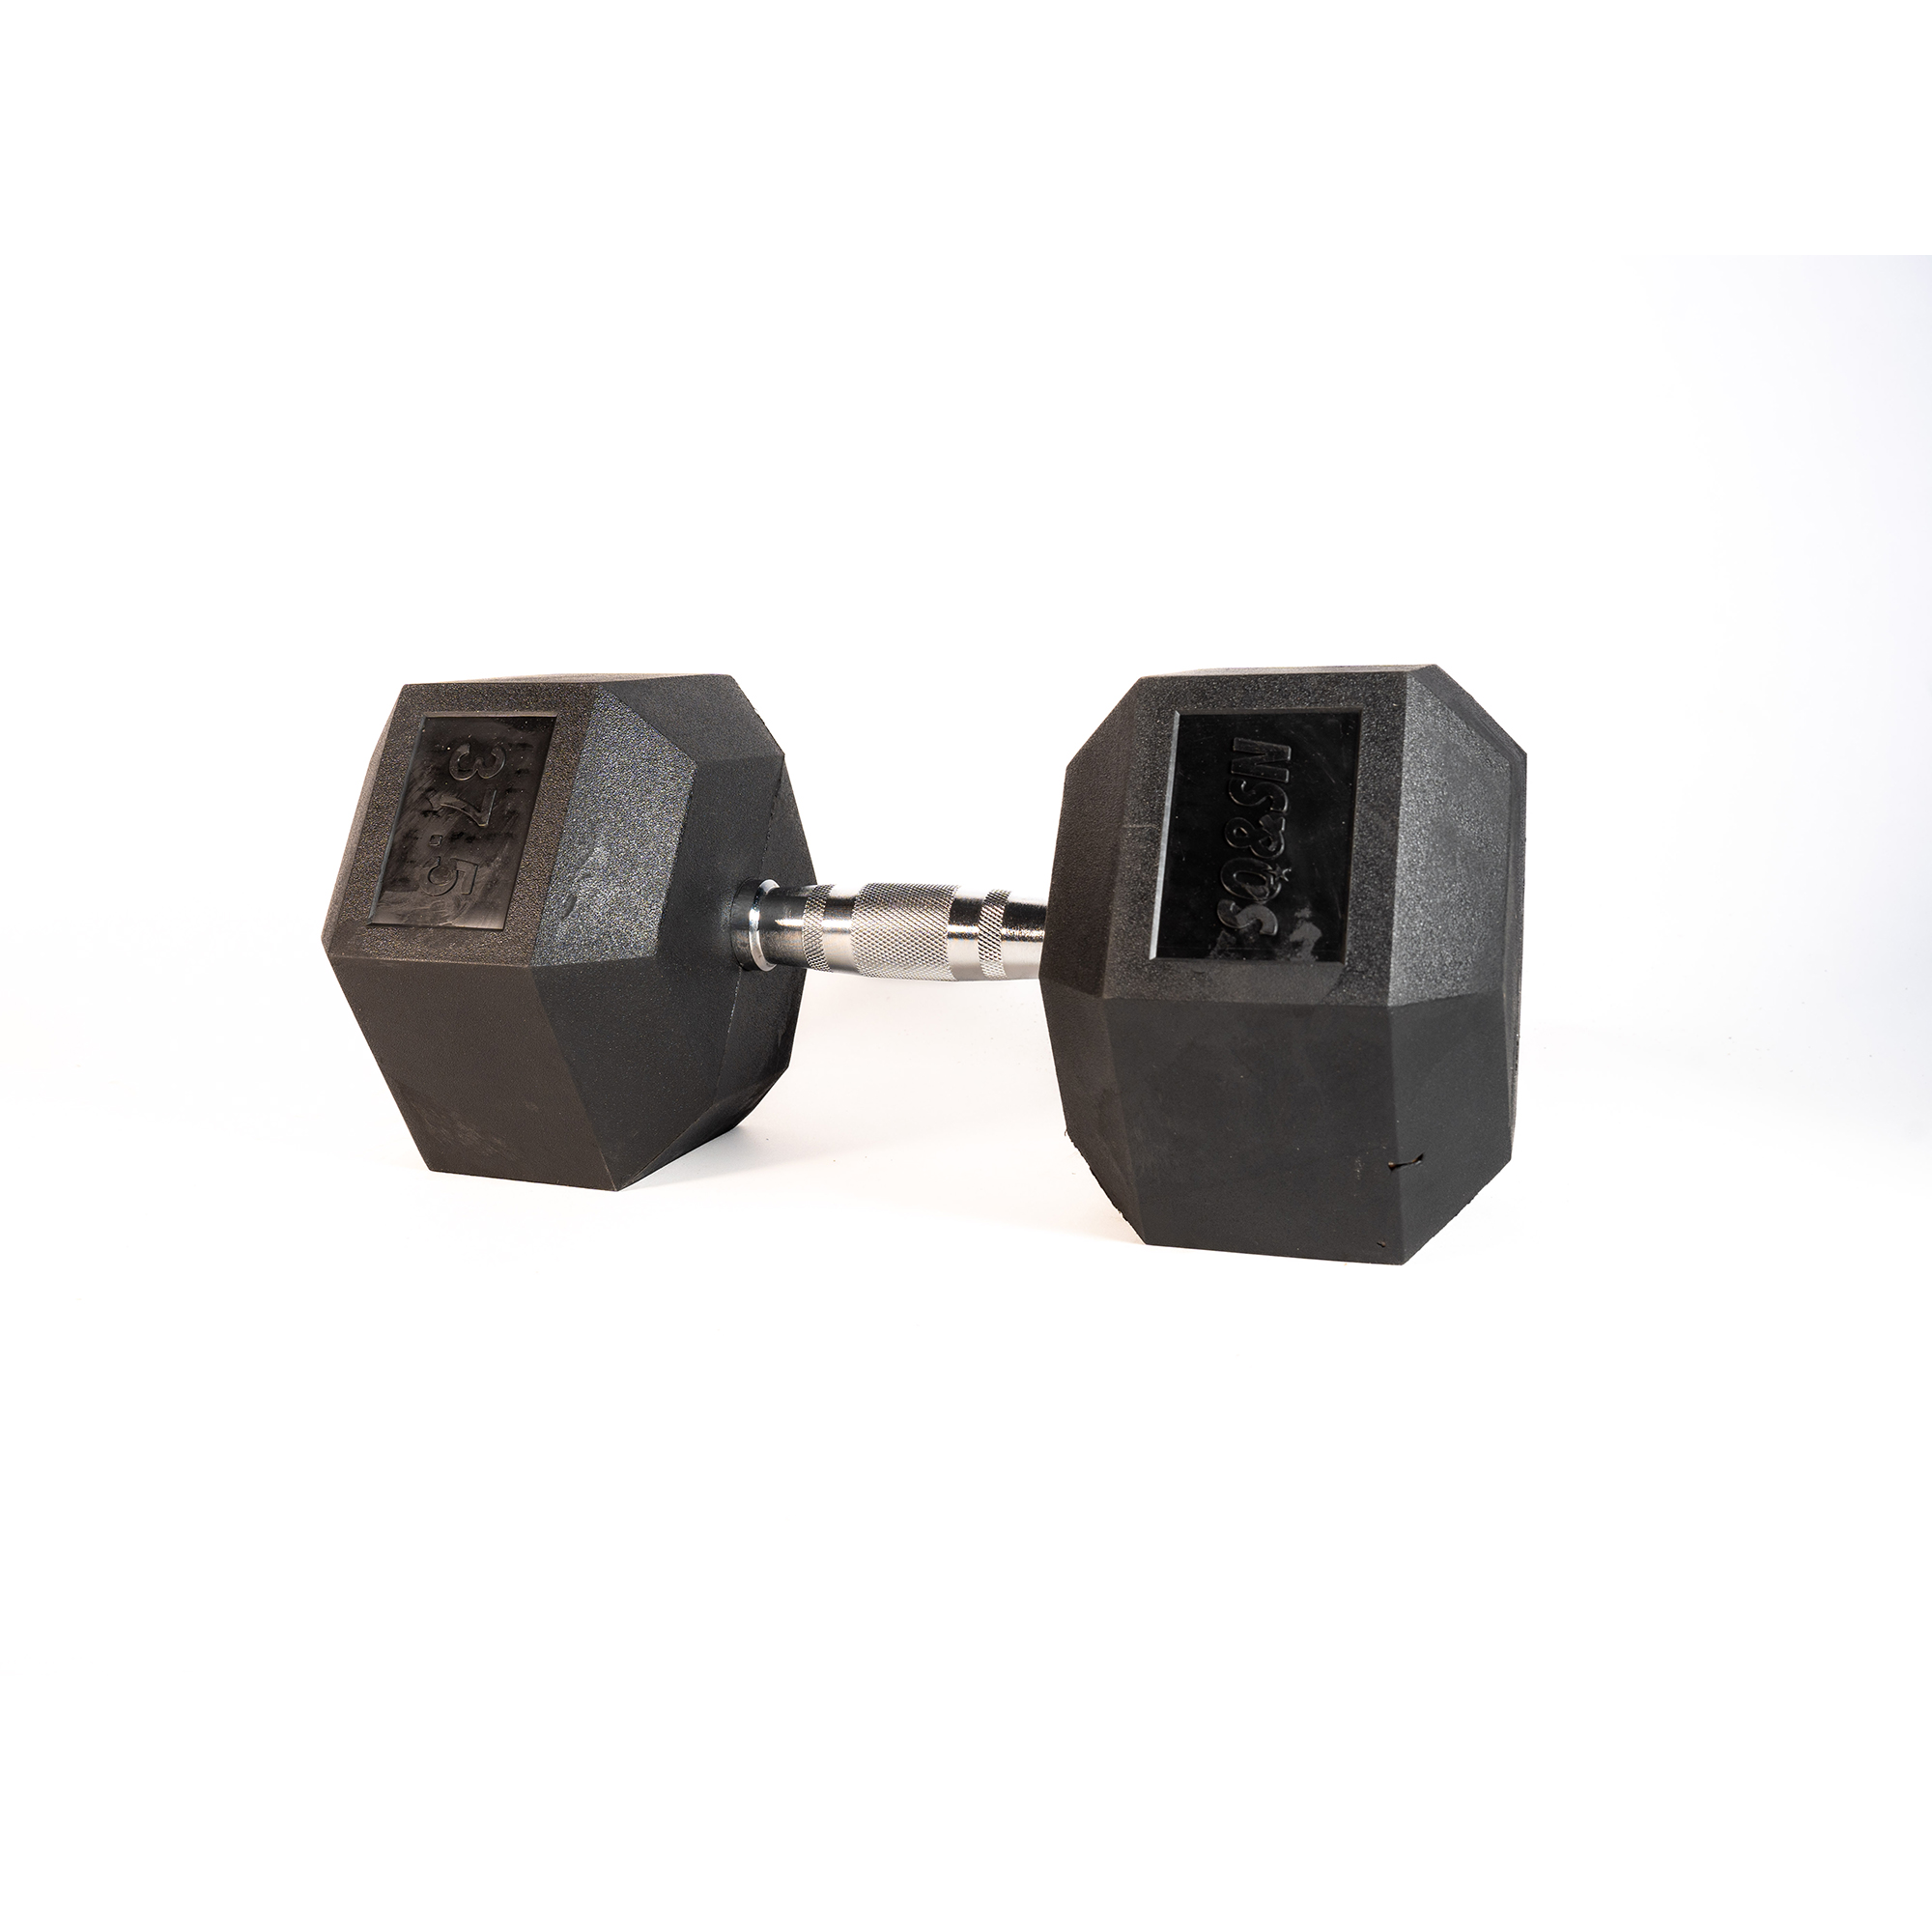 Brug SQ&SN Hexagon Håndvægt (37,5 kg) med forkromet greb. Udstyr til crossfit træning, styrketræning og funktionel træning til en forbedret oplevelse